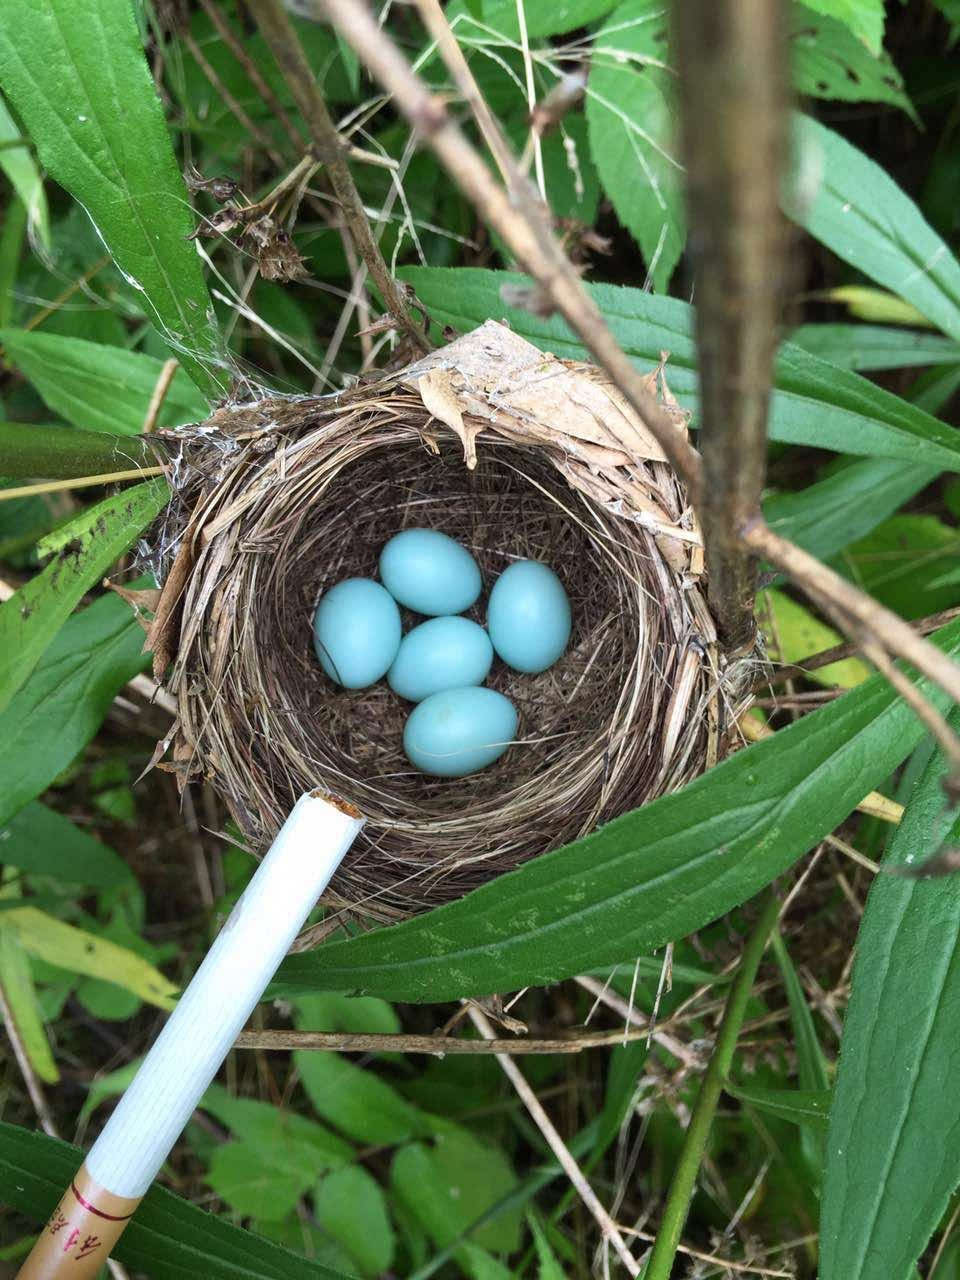 余姚村民家里发现天蓝色鸟蛋 你认识吗?